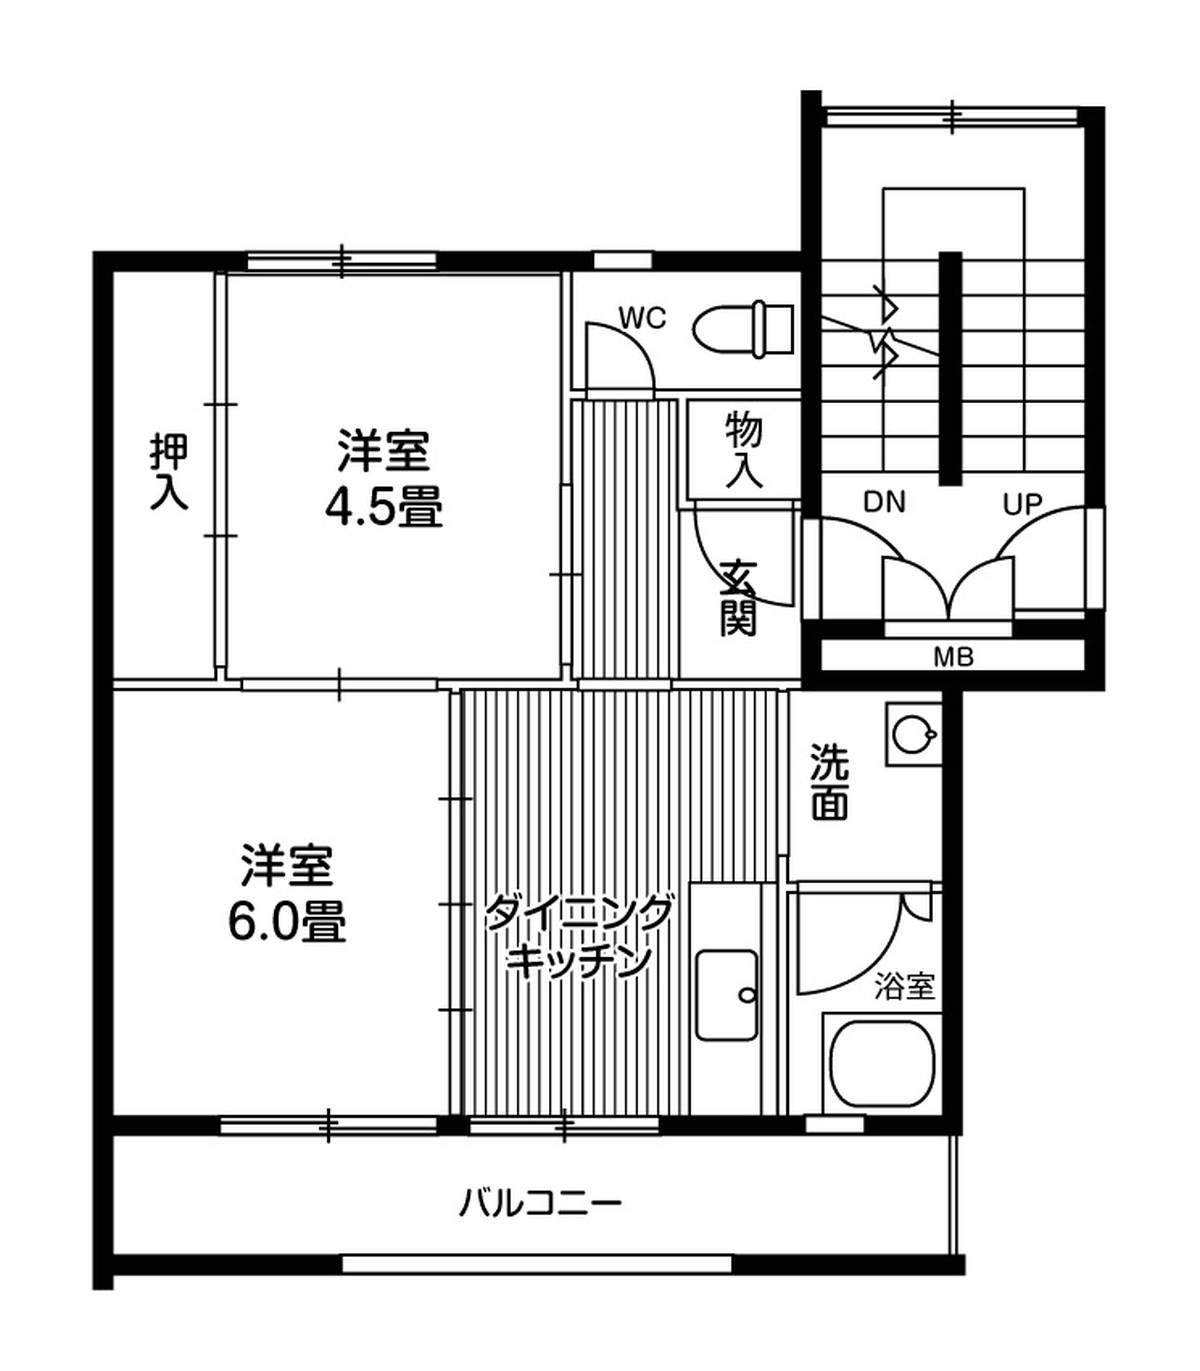 Sơ đồ phòng 2DK của Village House Tsurugaya 5 Chome ở Miyagino-ku